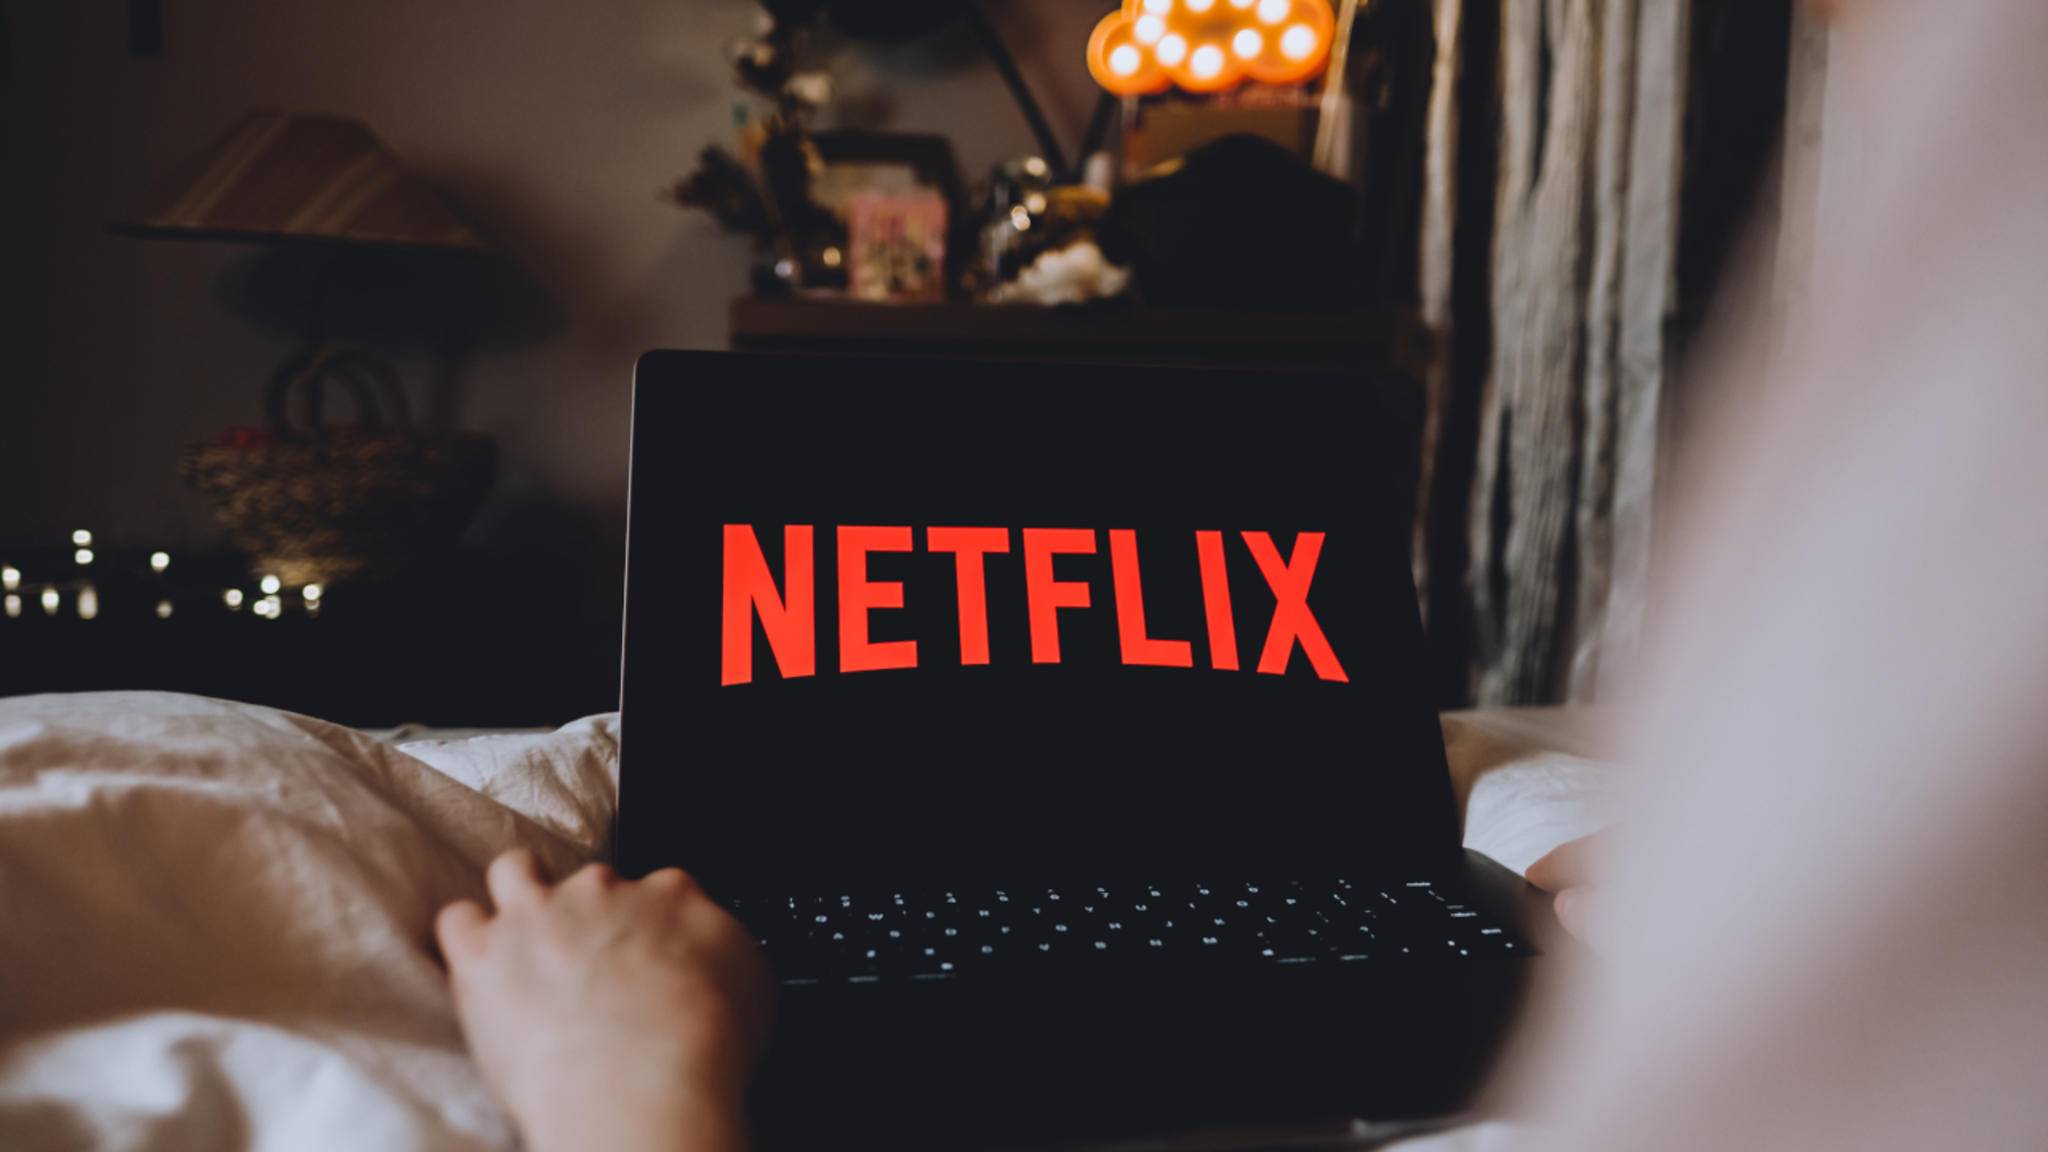 Netflix_Bed